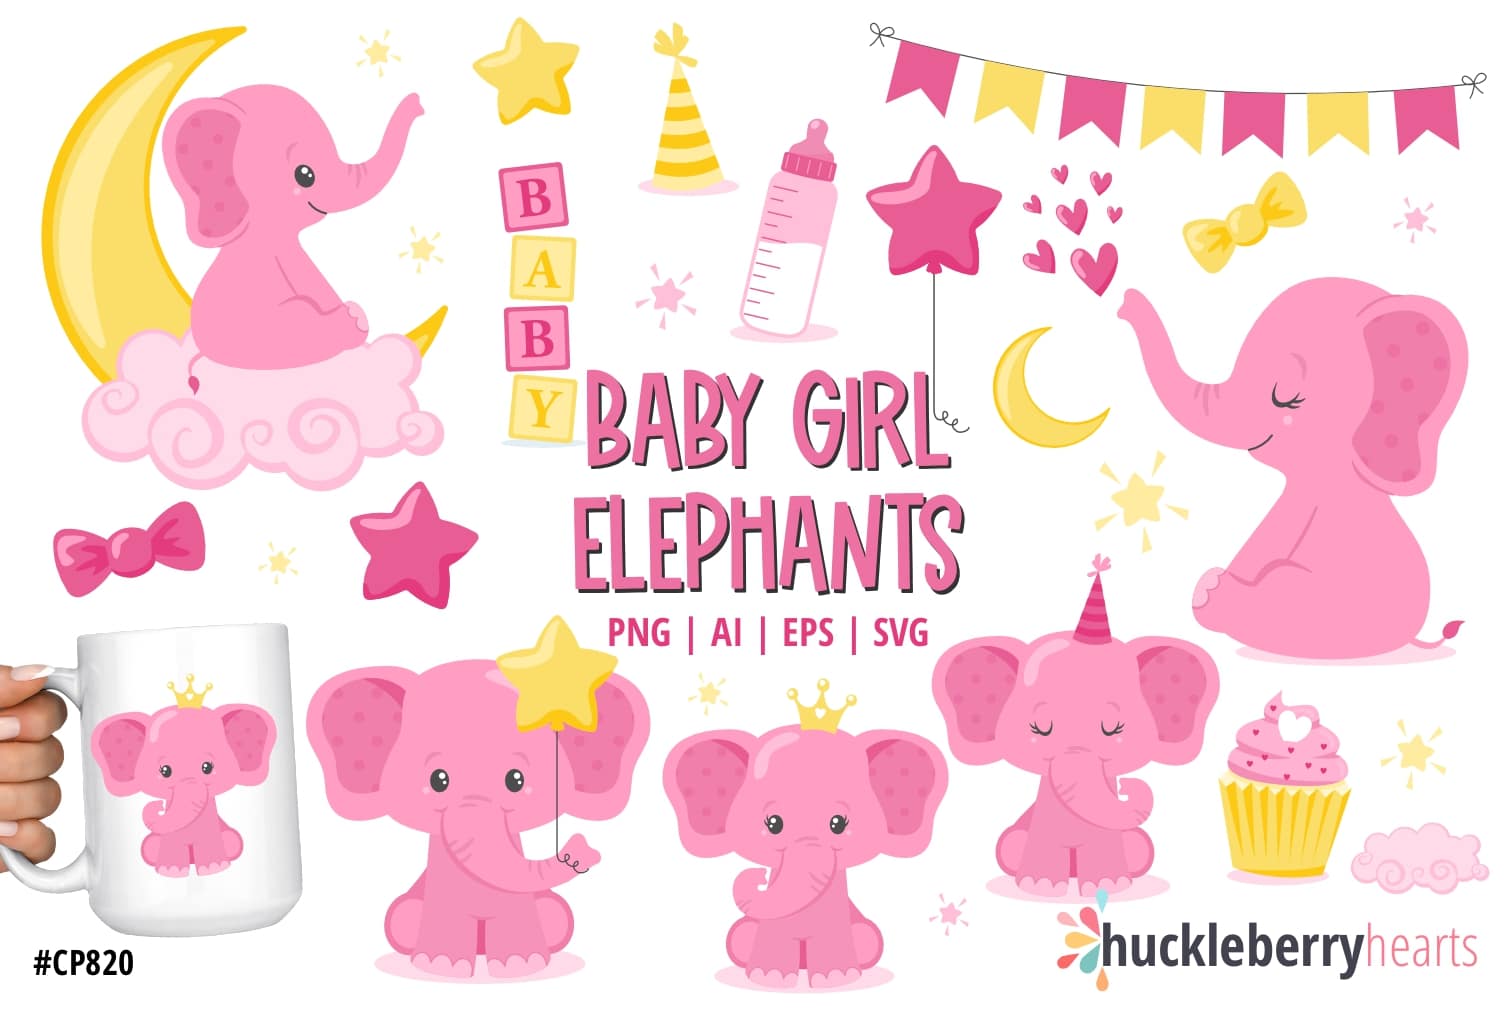 Baby Girl Elephants